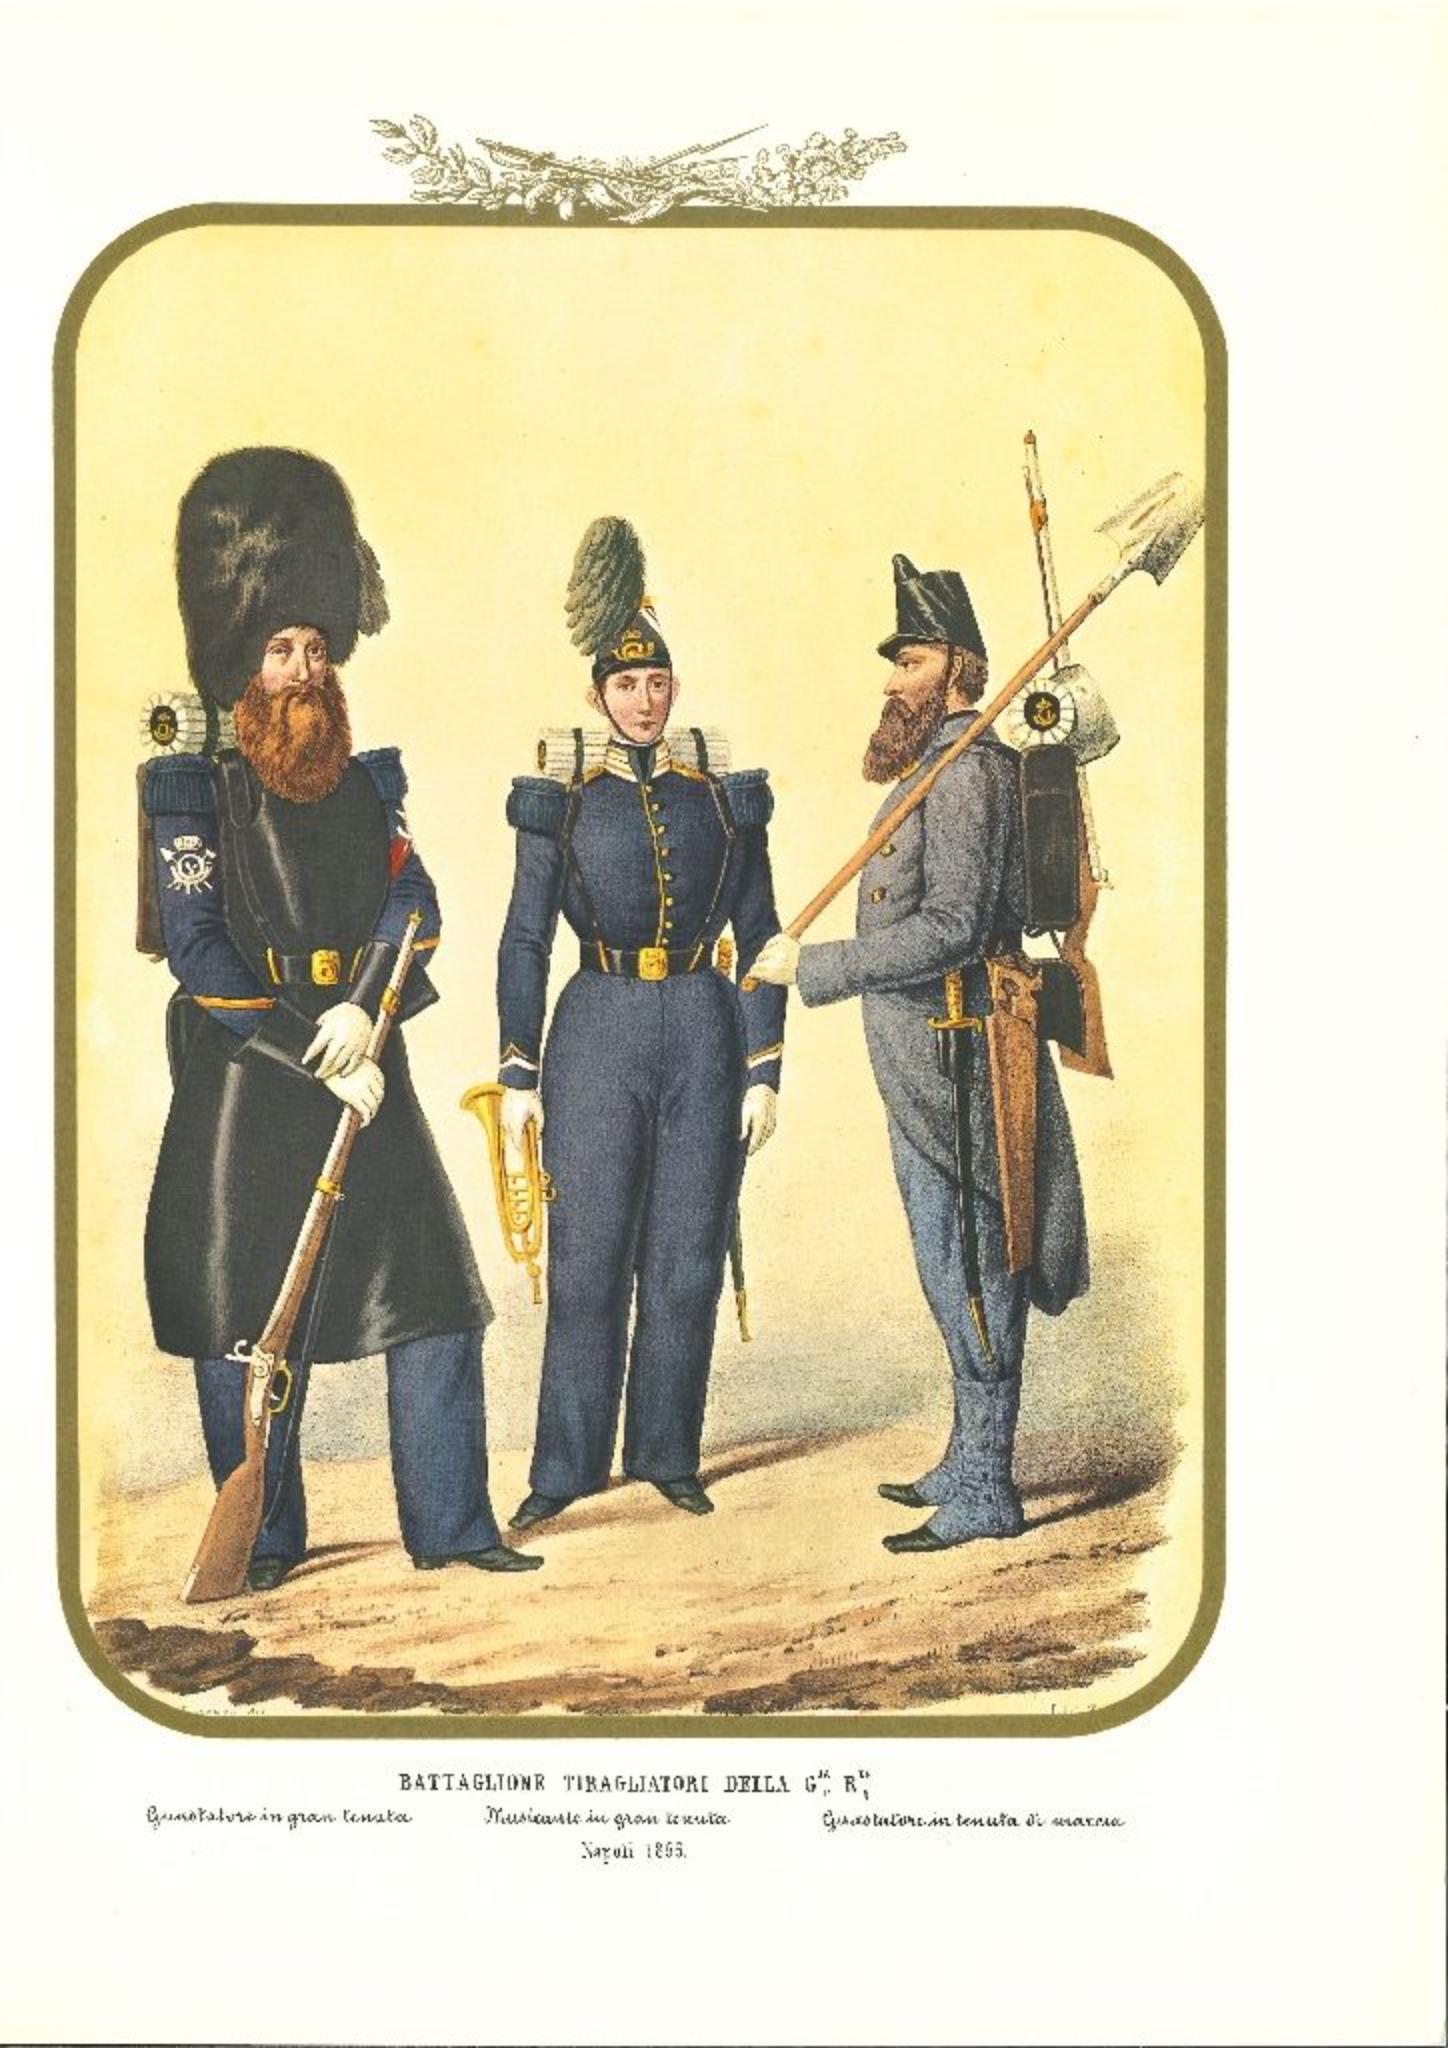 Antonio Zezon Figurative Print - Second Royal Guard Shooter Battalion - Original Lithograph by A. Zezon - 1856